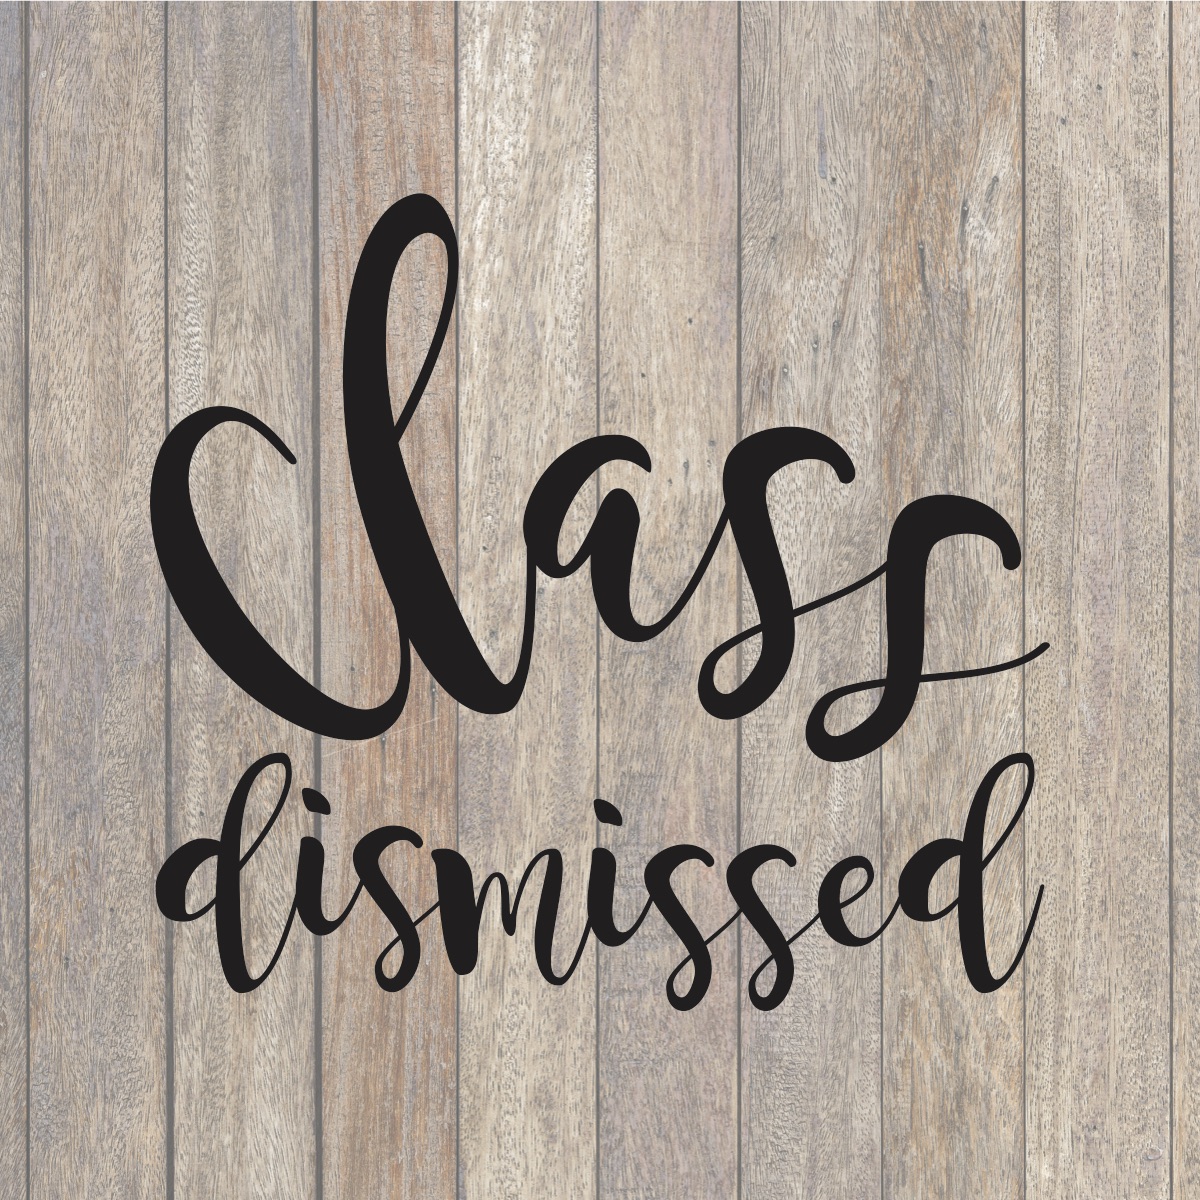 Class Dismissed - Elementary Arquivo de Corte SVG por Creative Fabrica  Crafts · Creative Fabrica